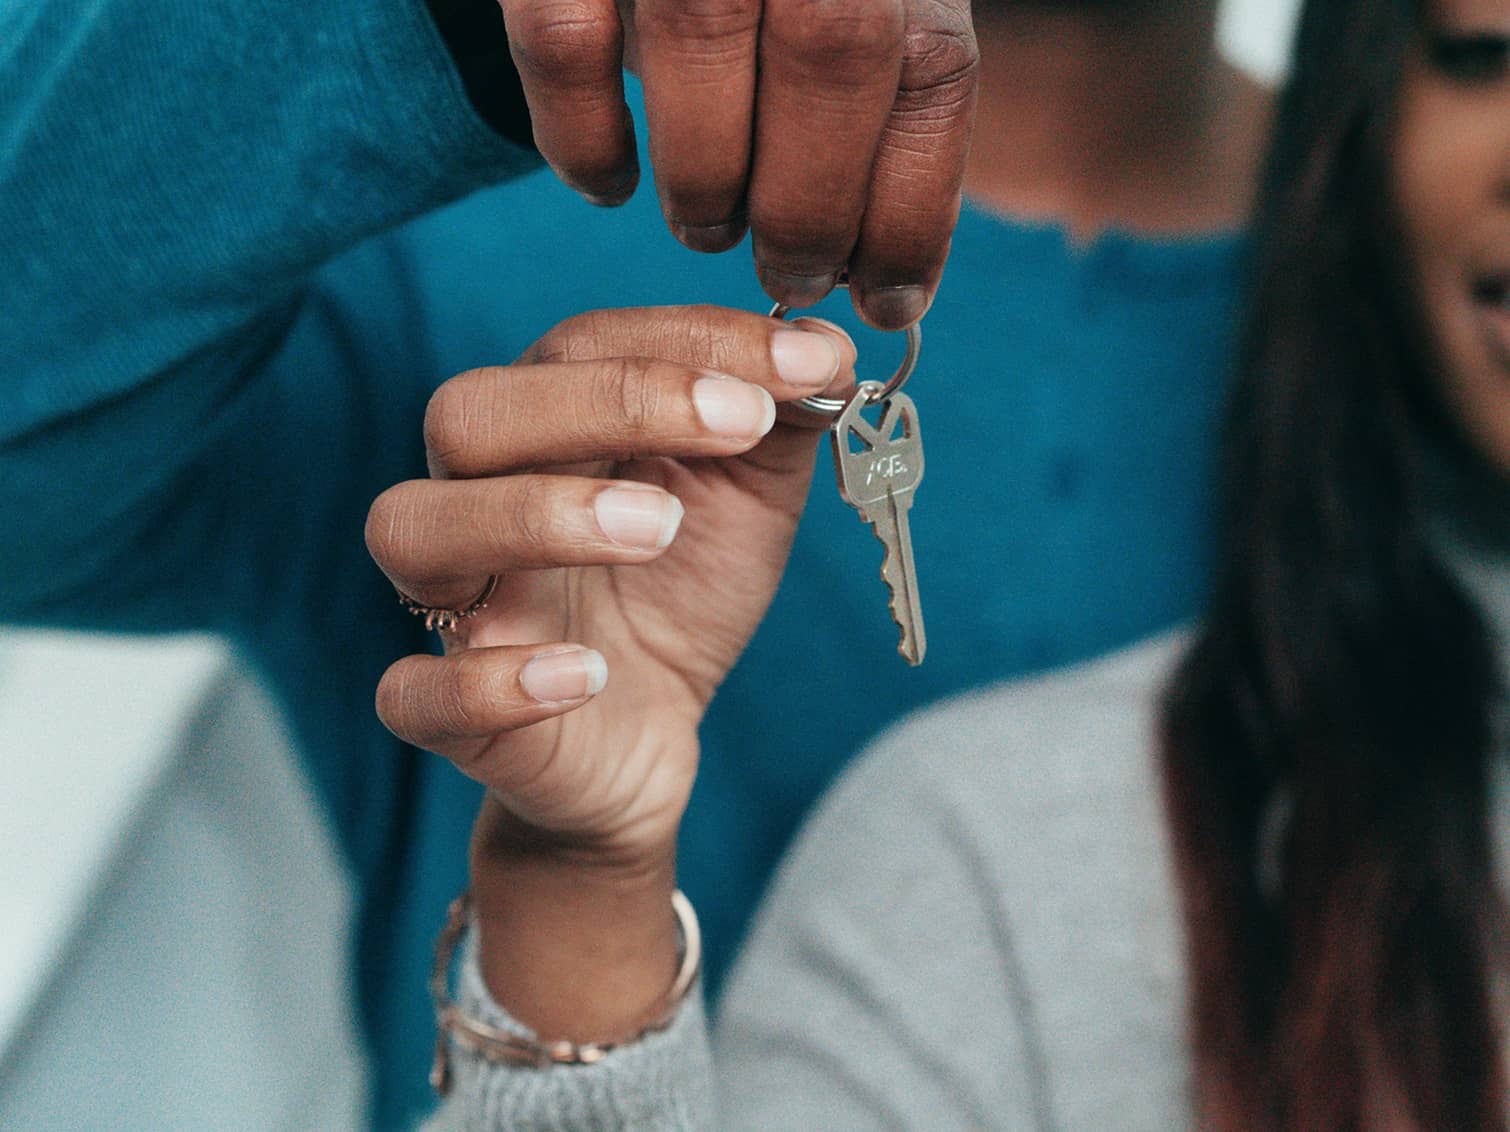 imagem de mão feminina segurando chave para representar o tópico do artigo sobre financiamento imobiliário